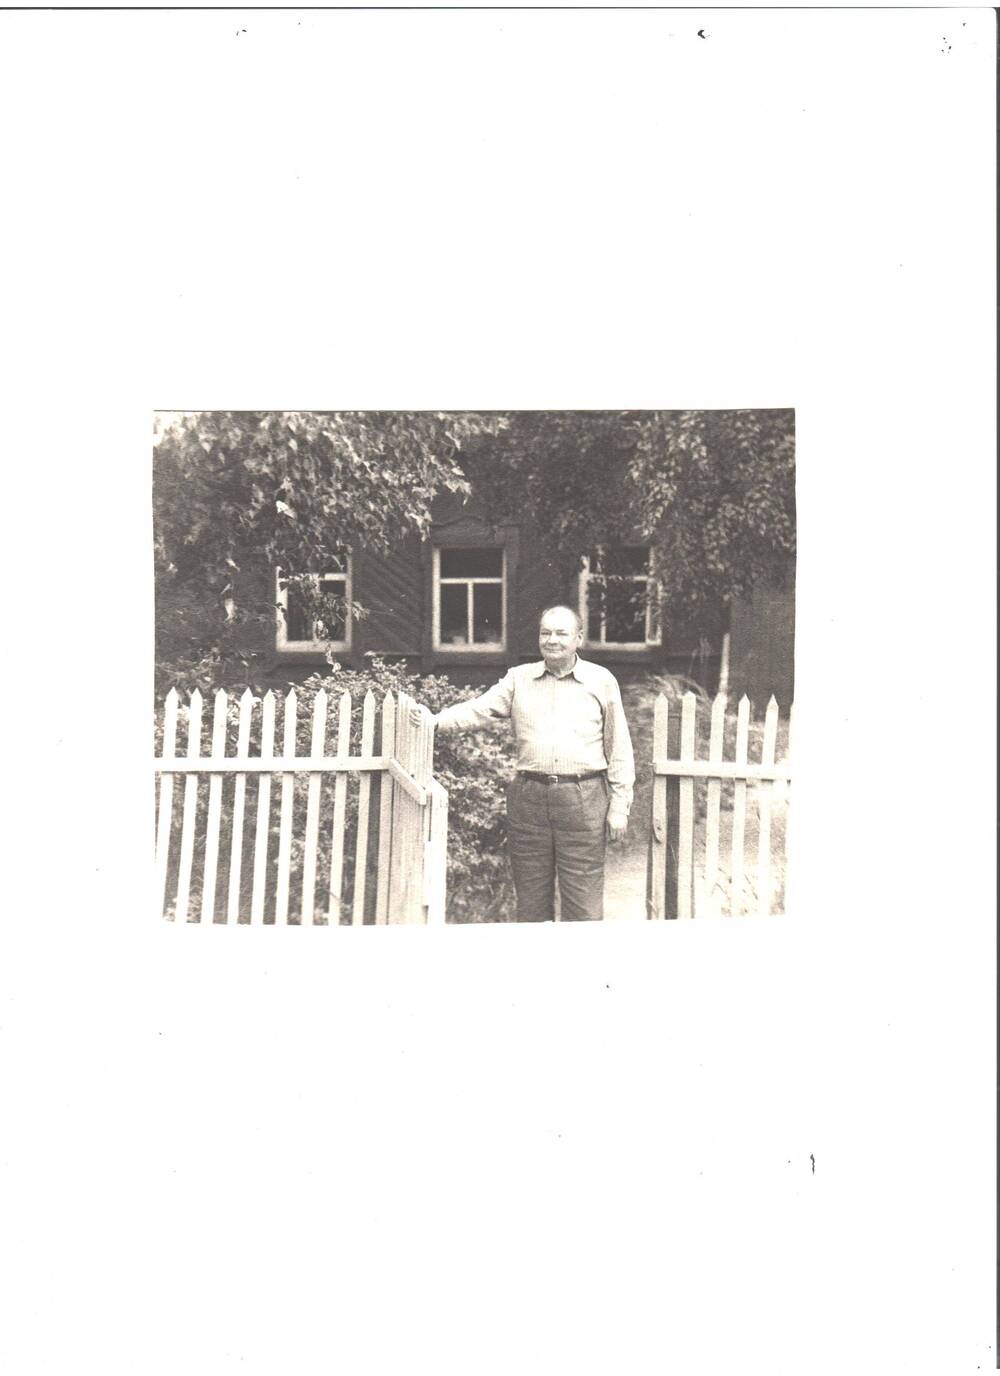 Фото сюжетное, черно-белое, снятое в 1970-х гг. На снимке: Ямалов Бари Фасхиевич, стоит у своего дома, время летнее, на деревьях листья. Снимался без верхней одежды, без головного убора, стоит у открытой калитки